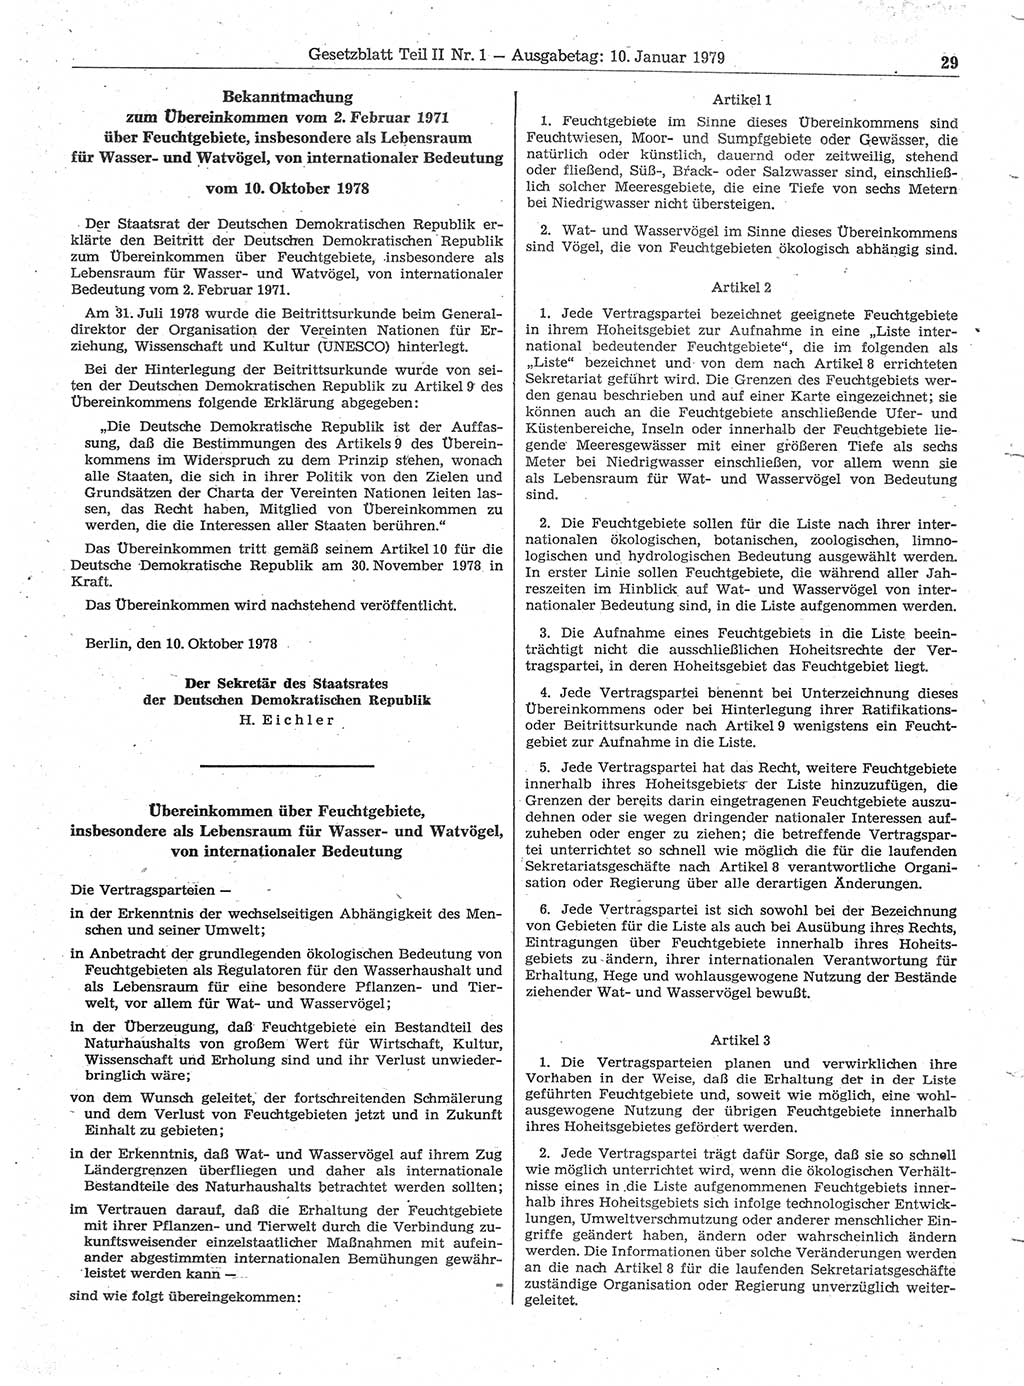 Gesetzblatt (GBl.) der Deutschen Demokratischen Republik (DDR) Teil ⅠⅠ 1979, Seite 29 (GBl. DDR ⅠⅠ 1979, S. 29)